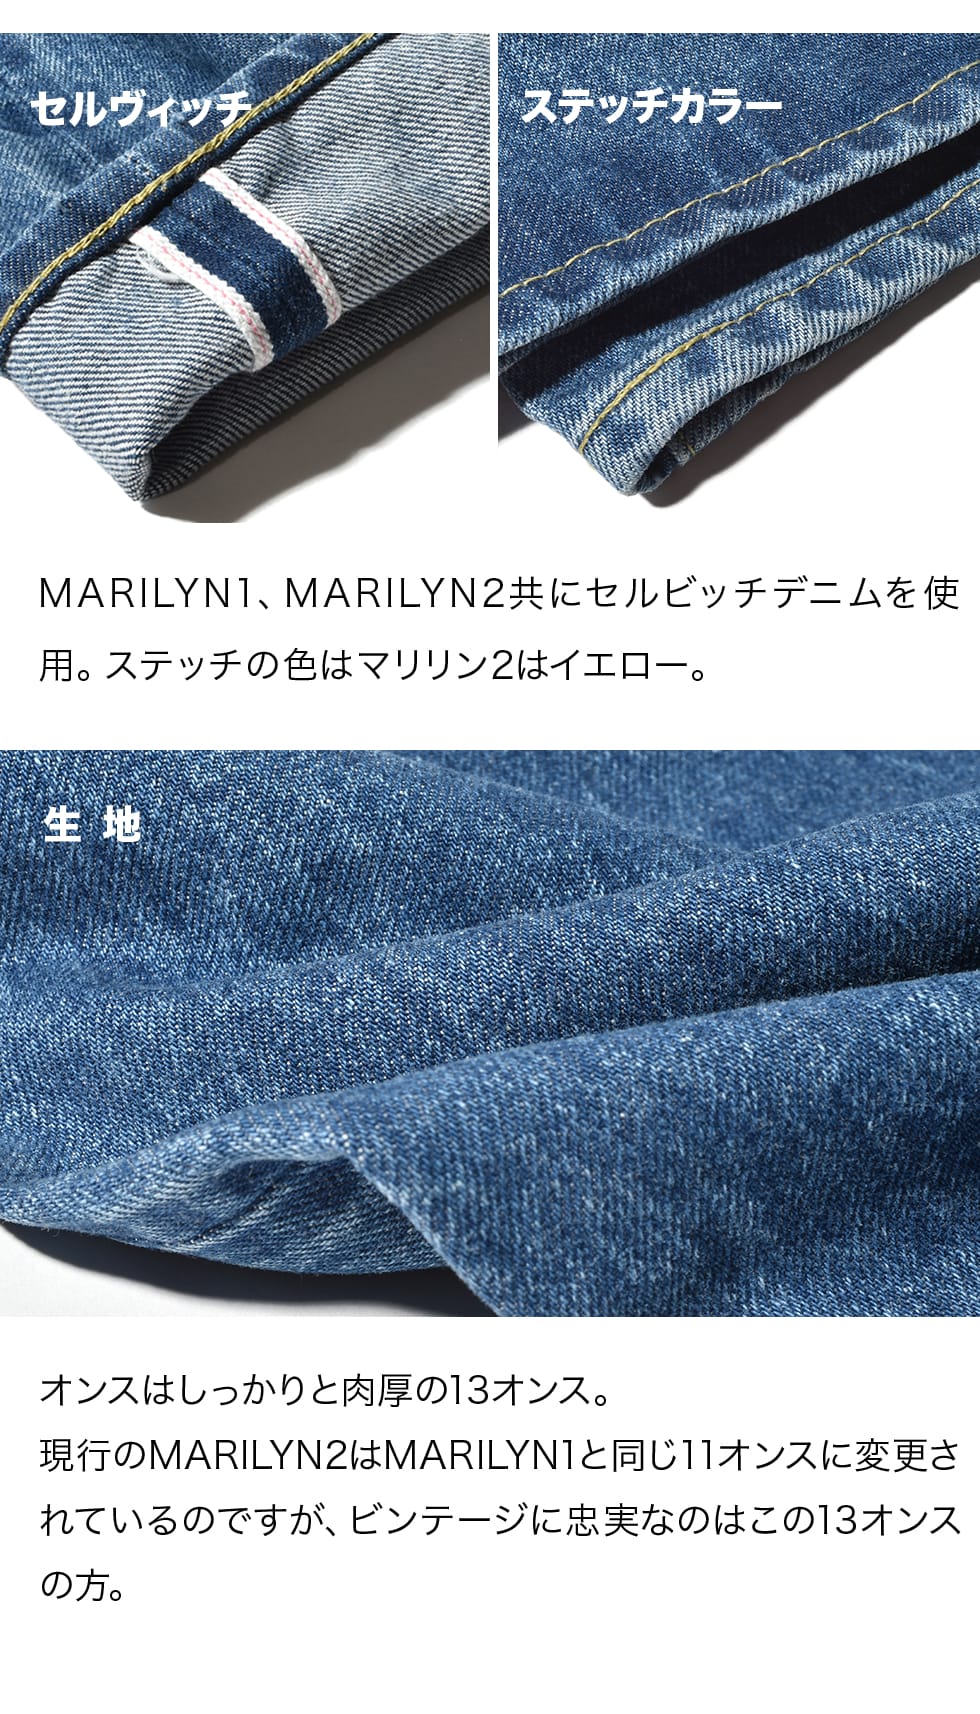 販売公式 Y様 アナトミカ マリリン2 サイズ27 - パンツ